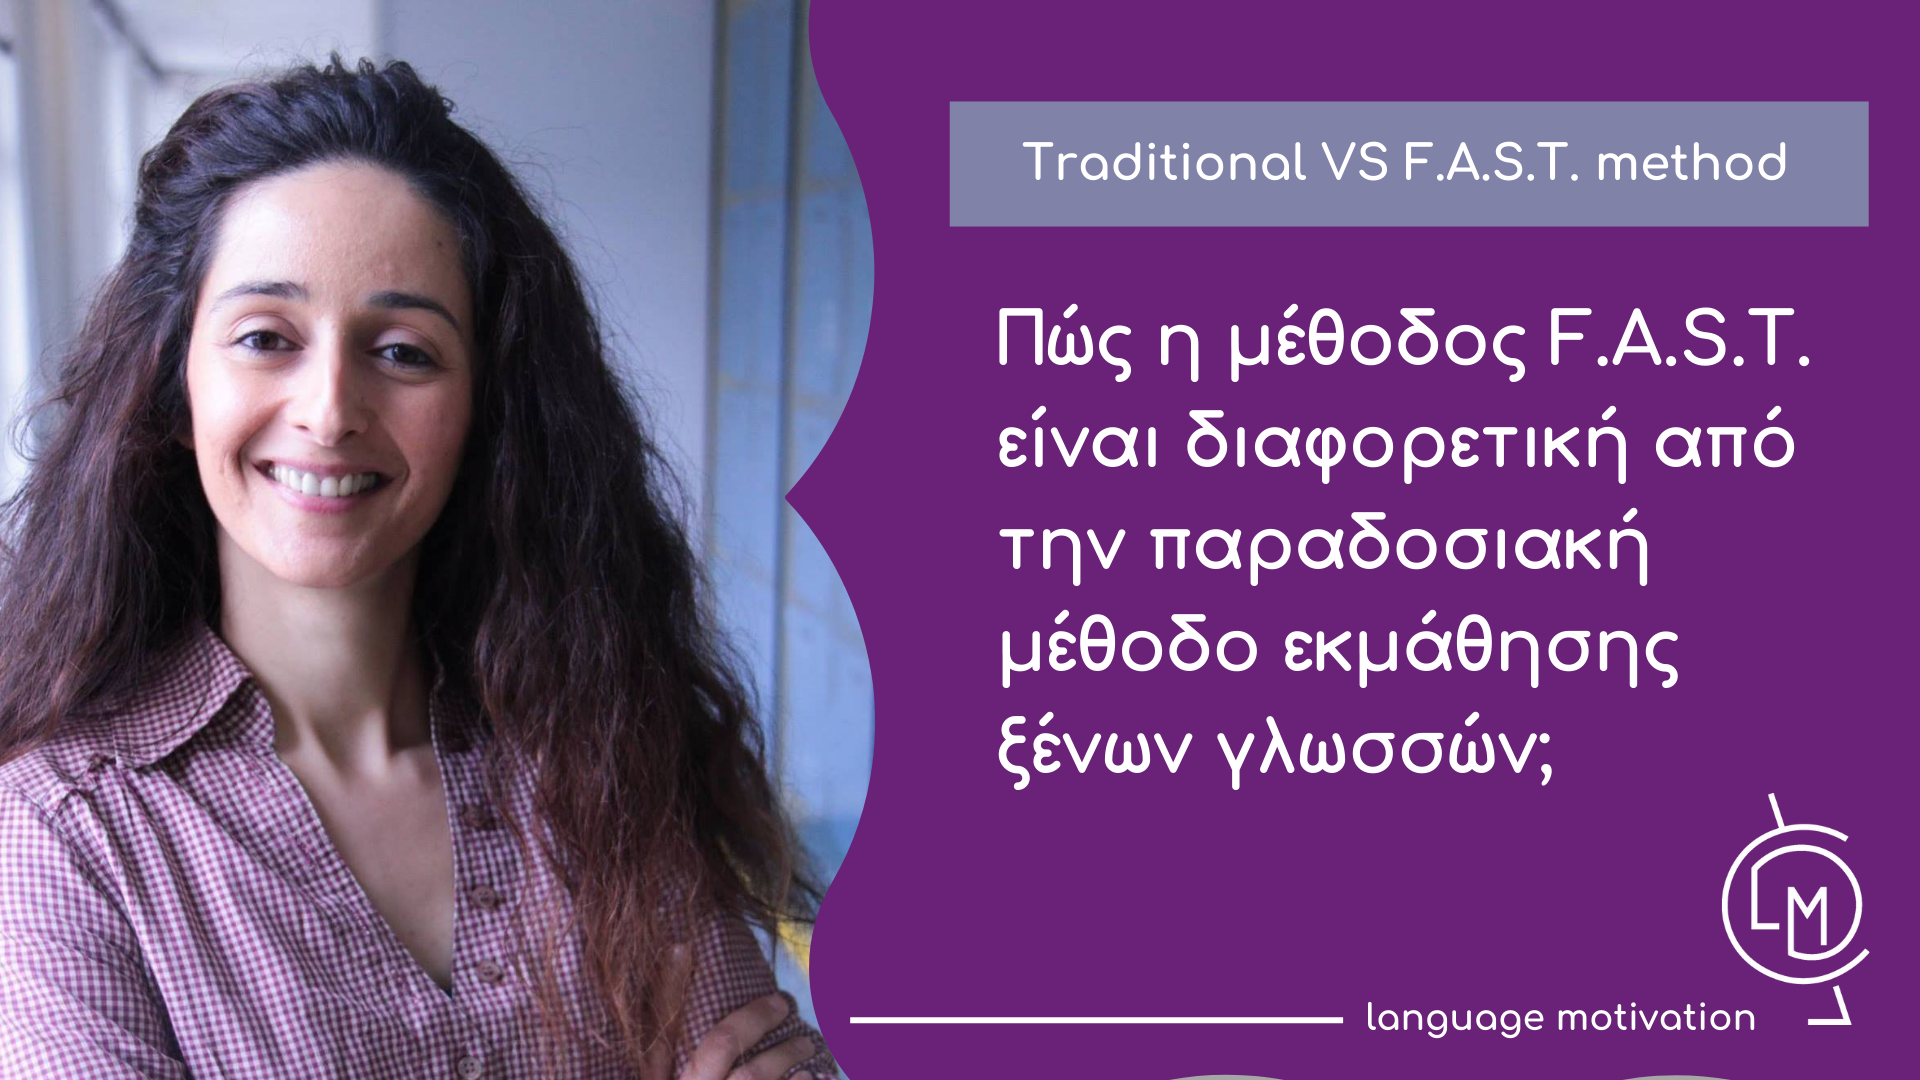 Πώς η μέθοδος F.A.S.T. είναι διαφορετική από την παραδοσιακή μέθοδο εκμάθησης ξένων γλωσσών;